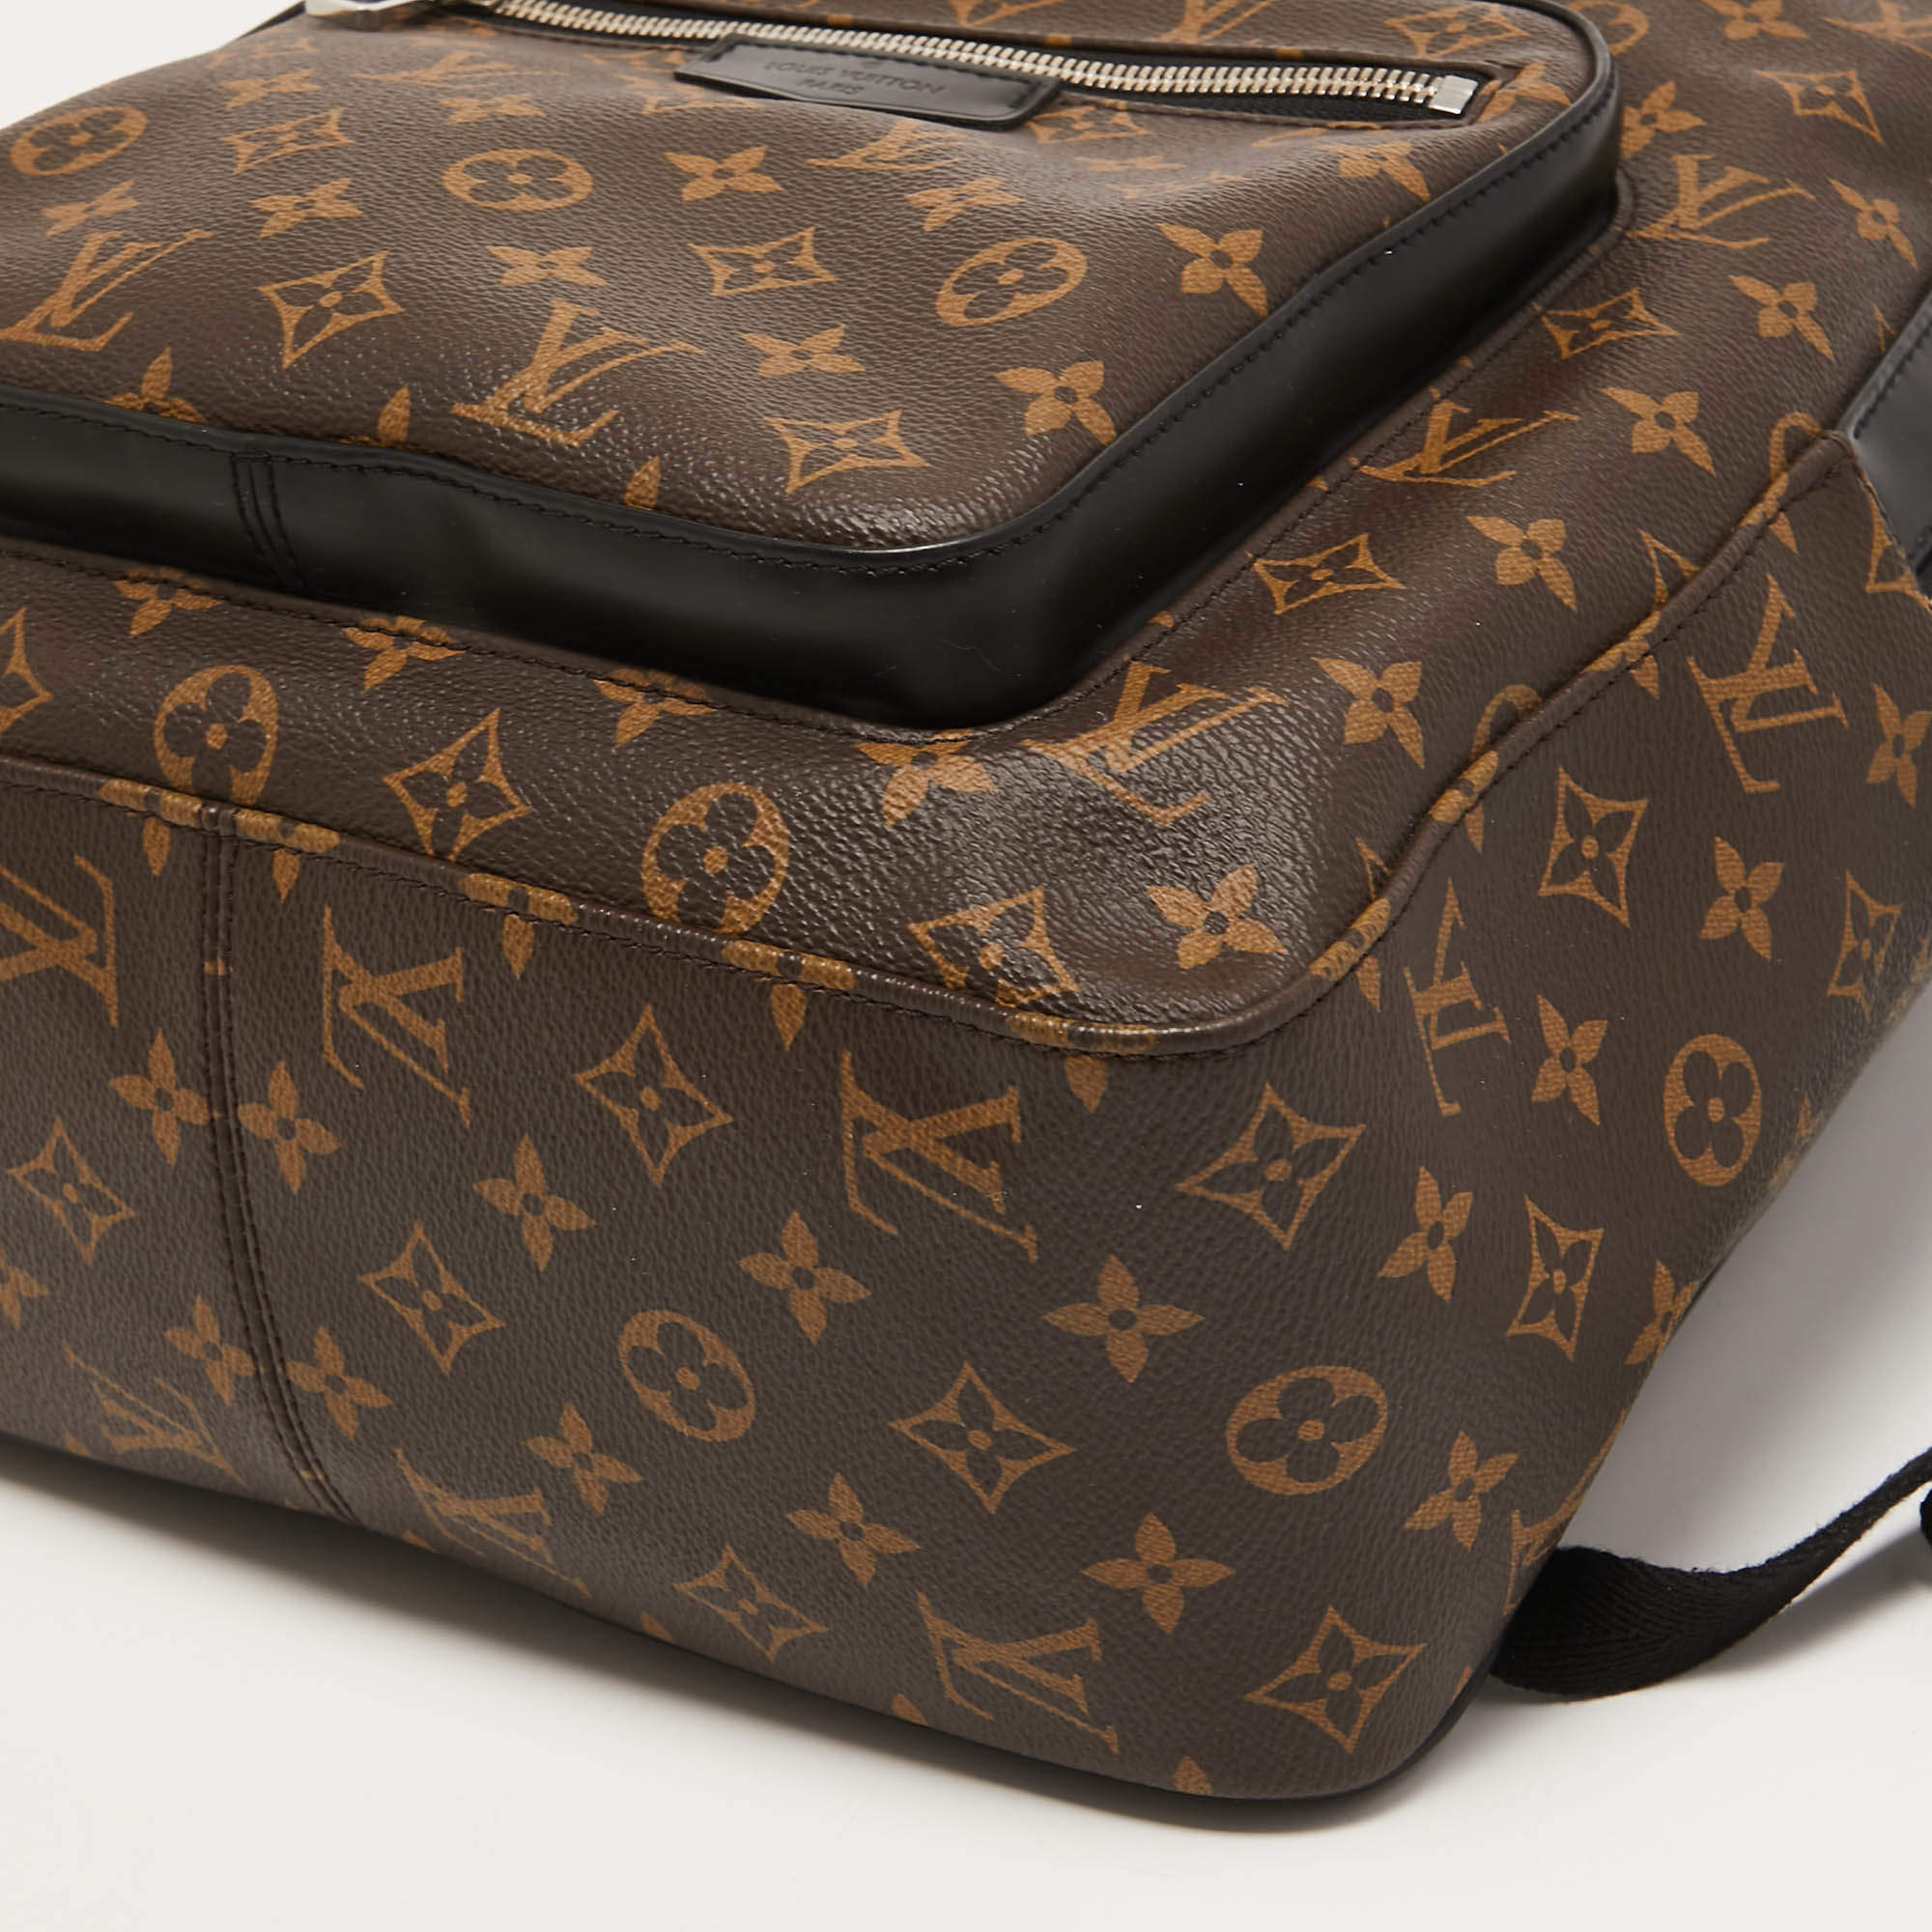 Louis Vuitton Monogram Macassar Josh Backpack - Brown Backpacks, Bags -  LOU762003